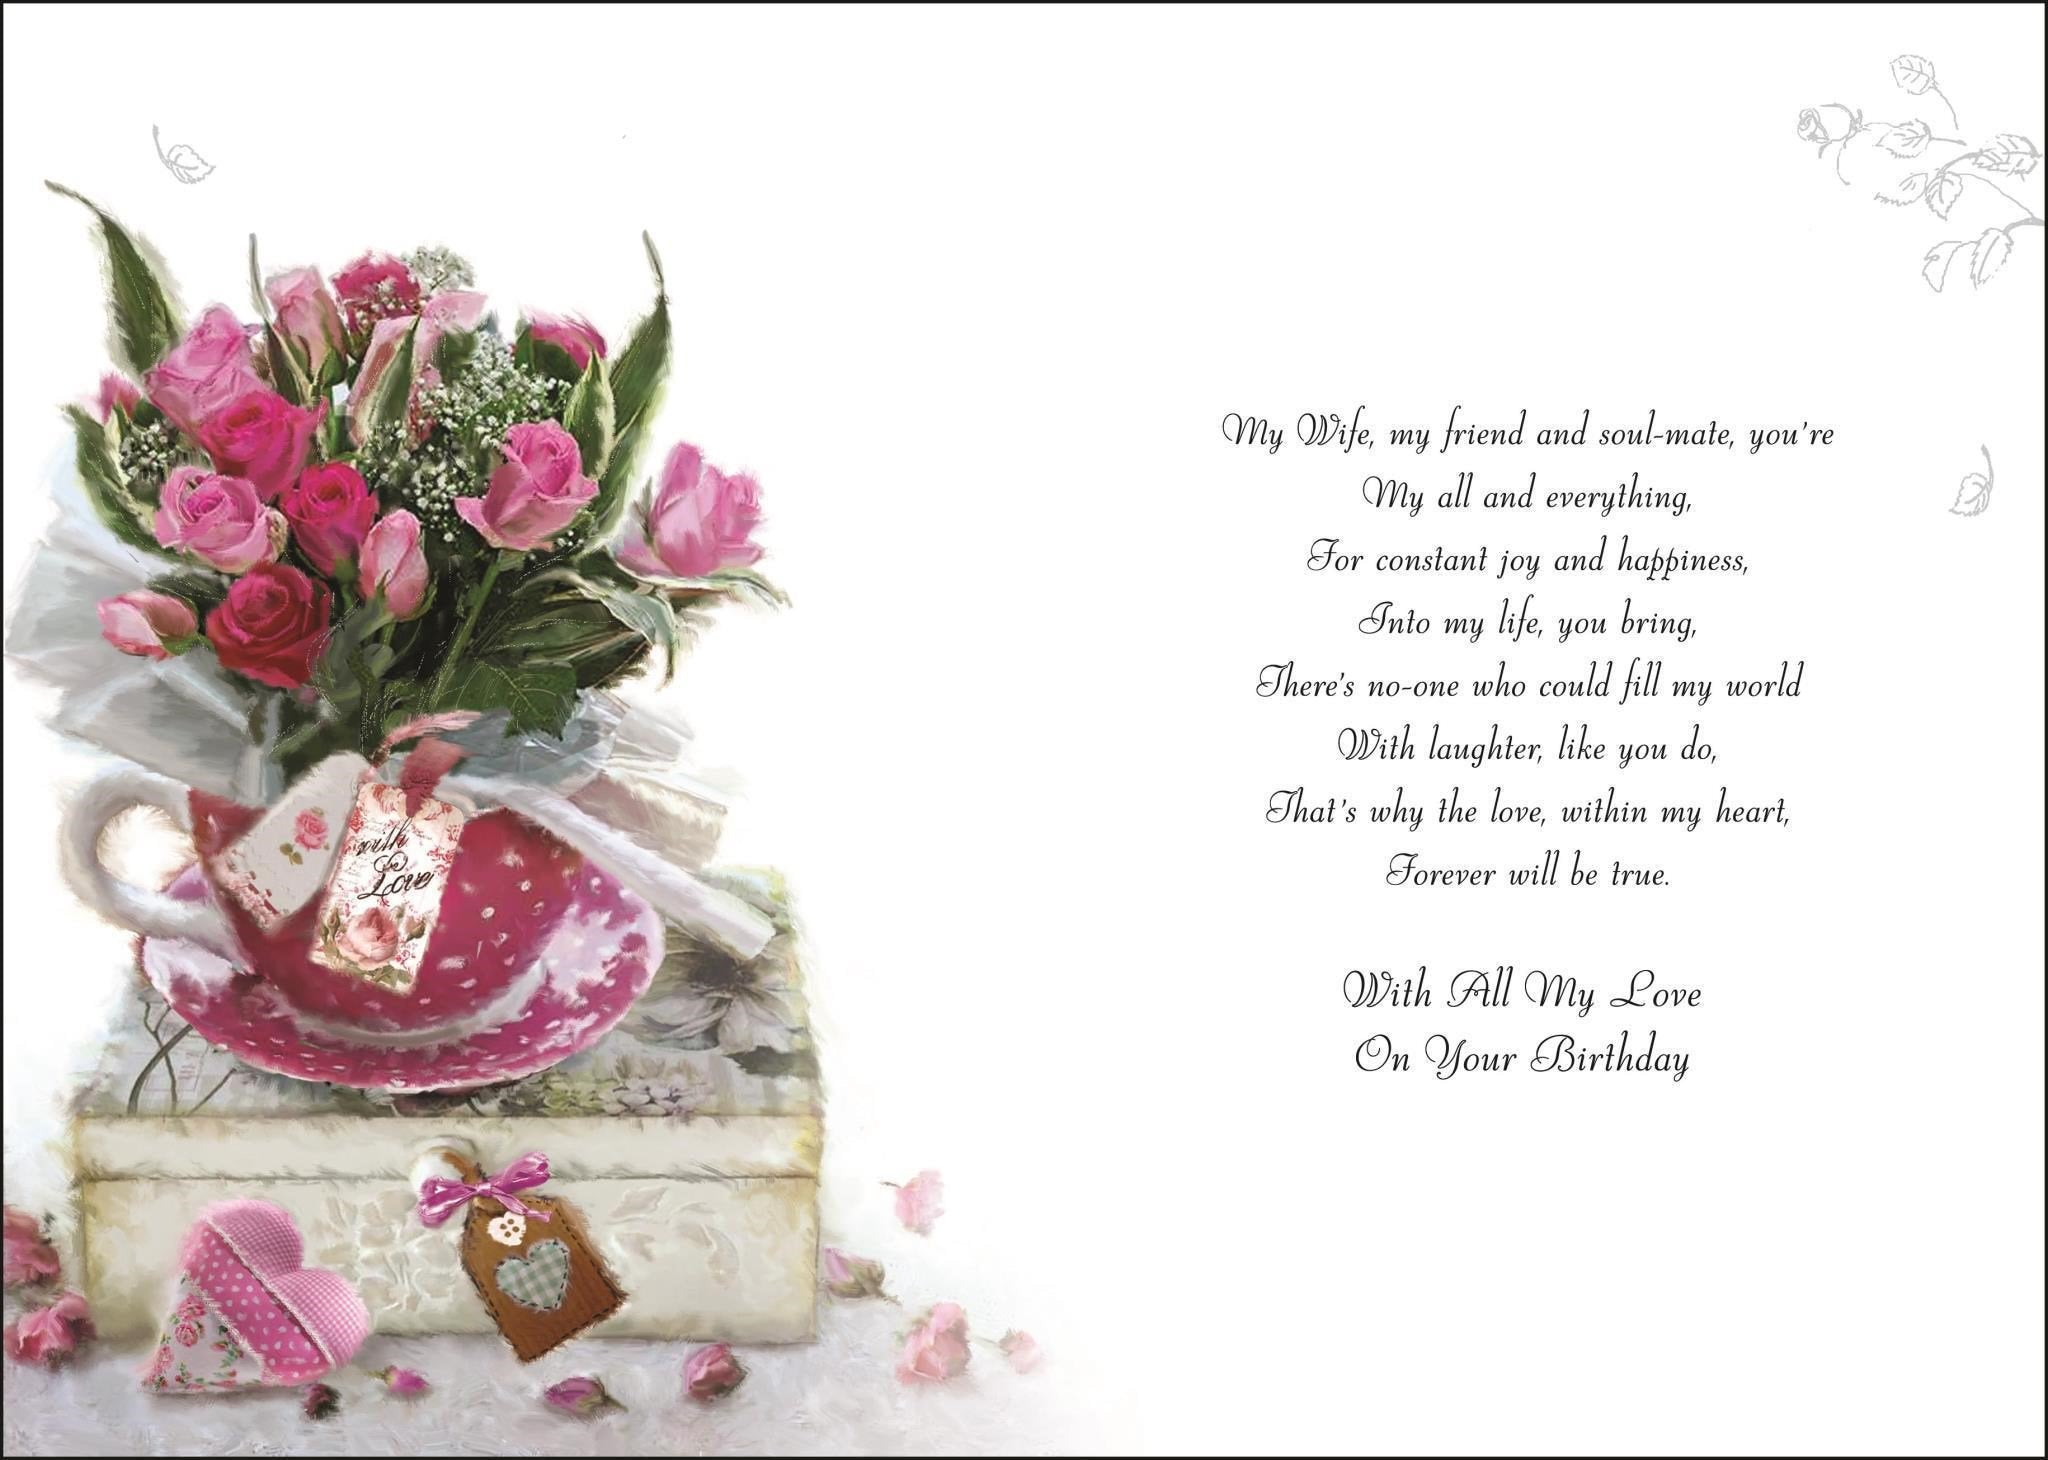 Inside of Wife Roses in Teacup Birthday Greetings Card